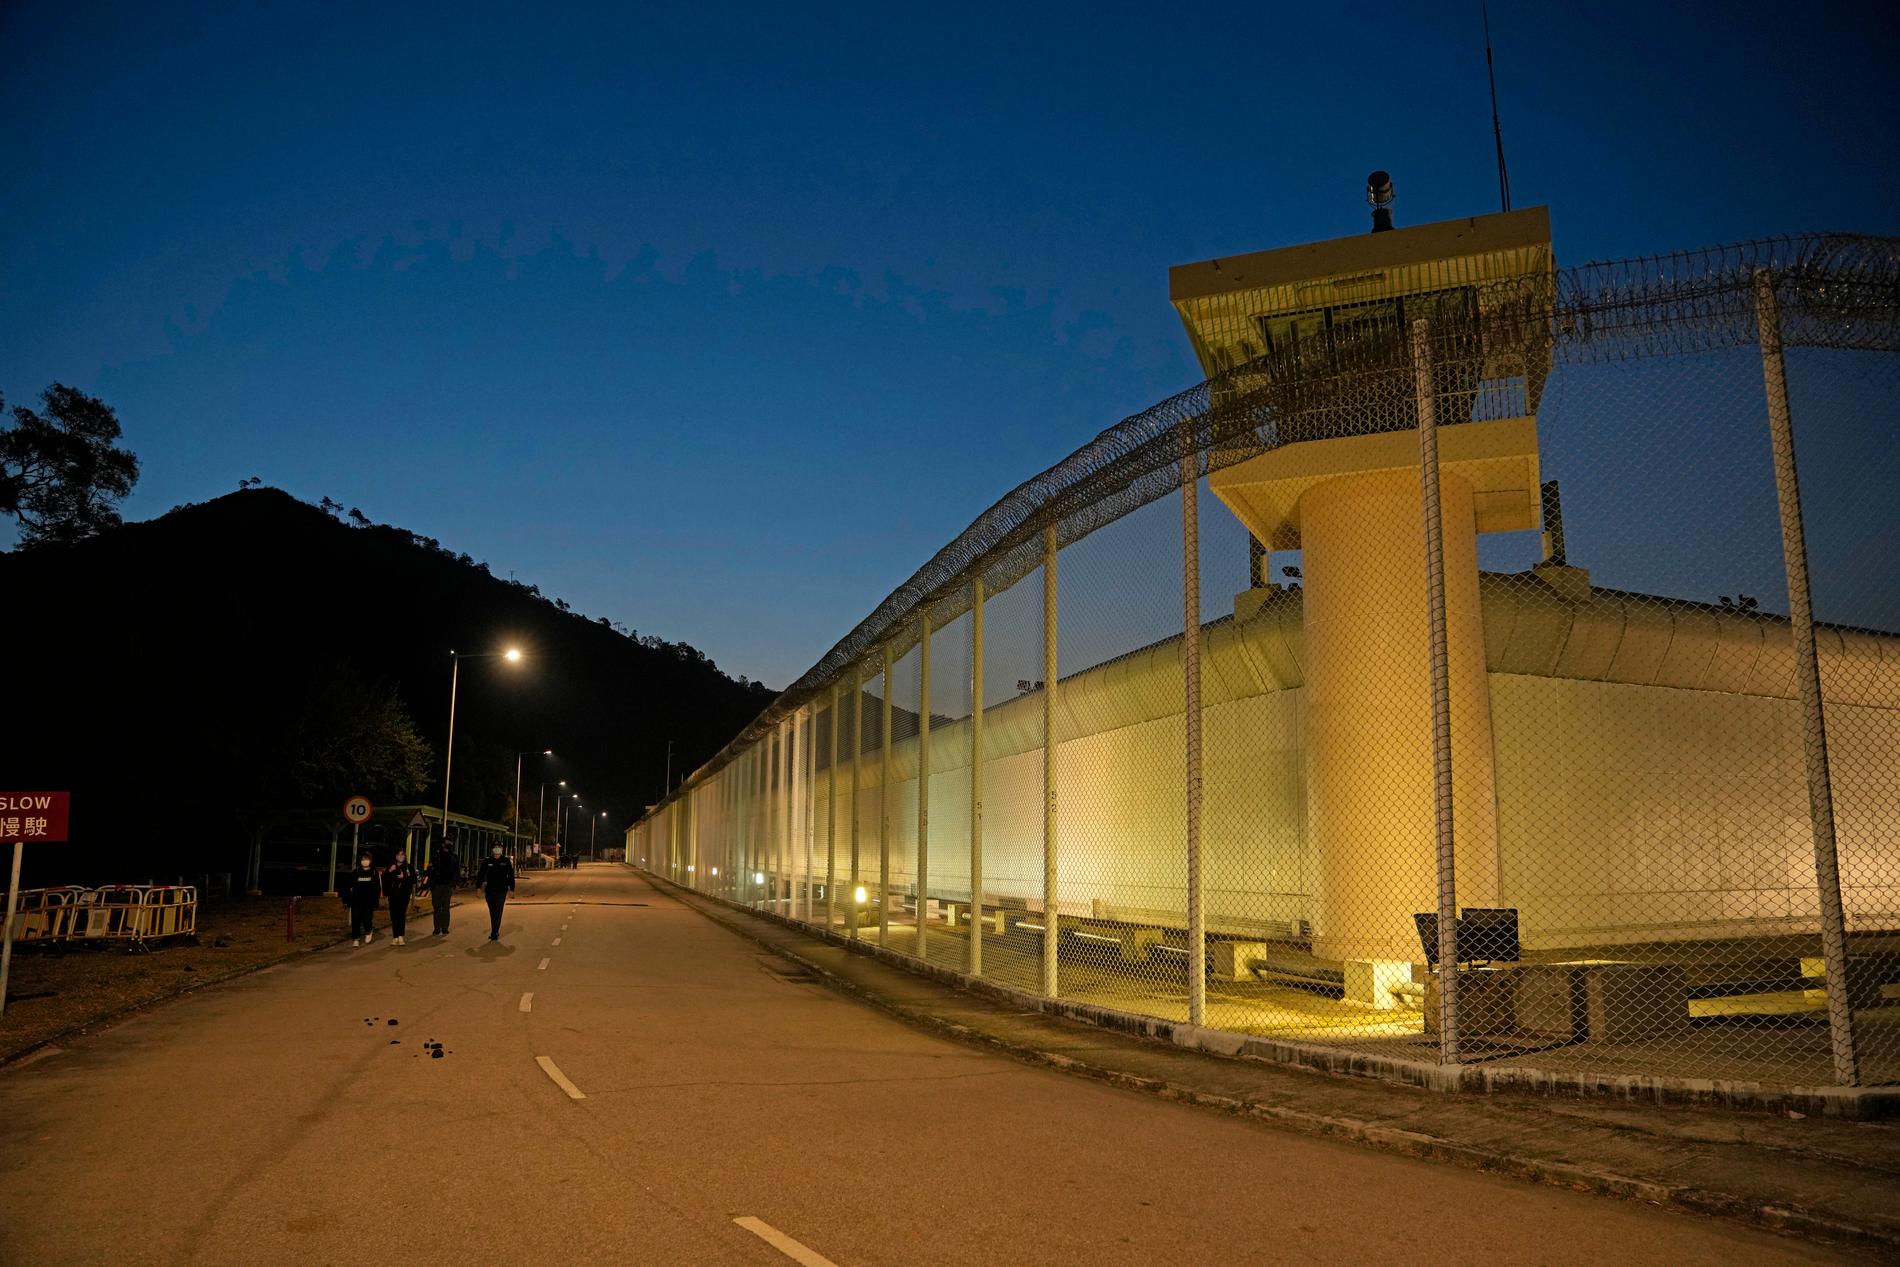 Det var ödsligt utanför Shek Pik -fängelset i Hongkong när aktivisten Edward Leung släpptes före gryningen på onsdagen.